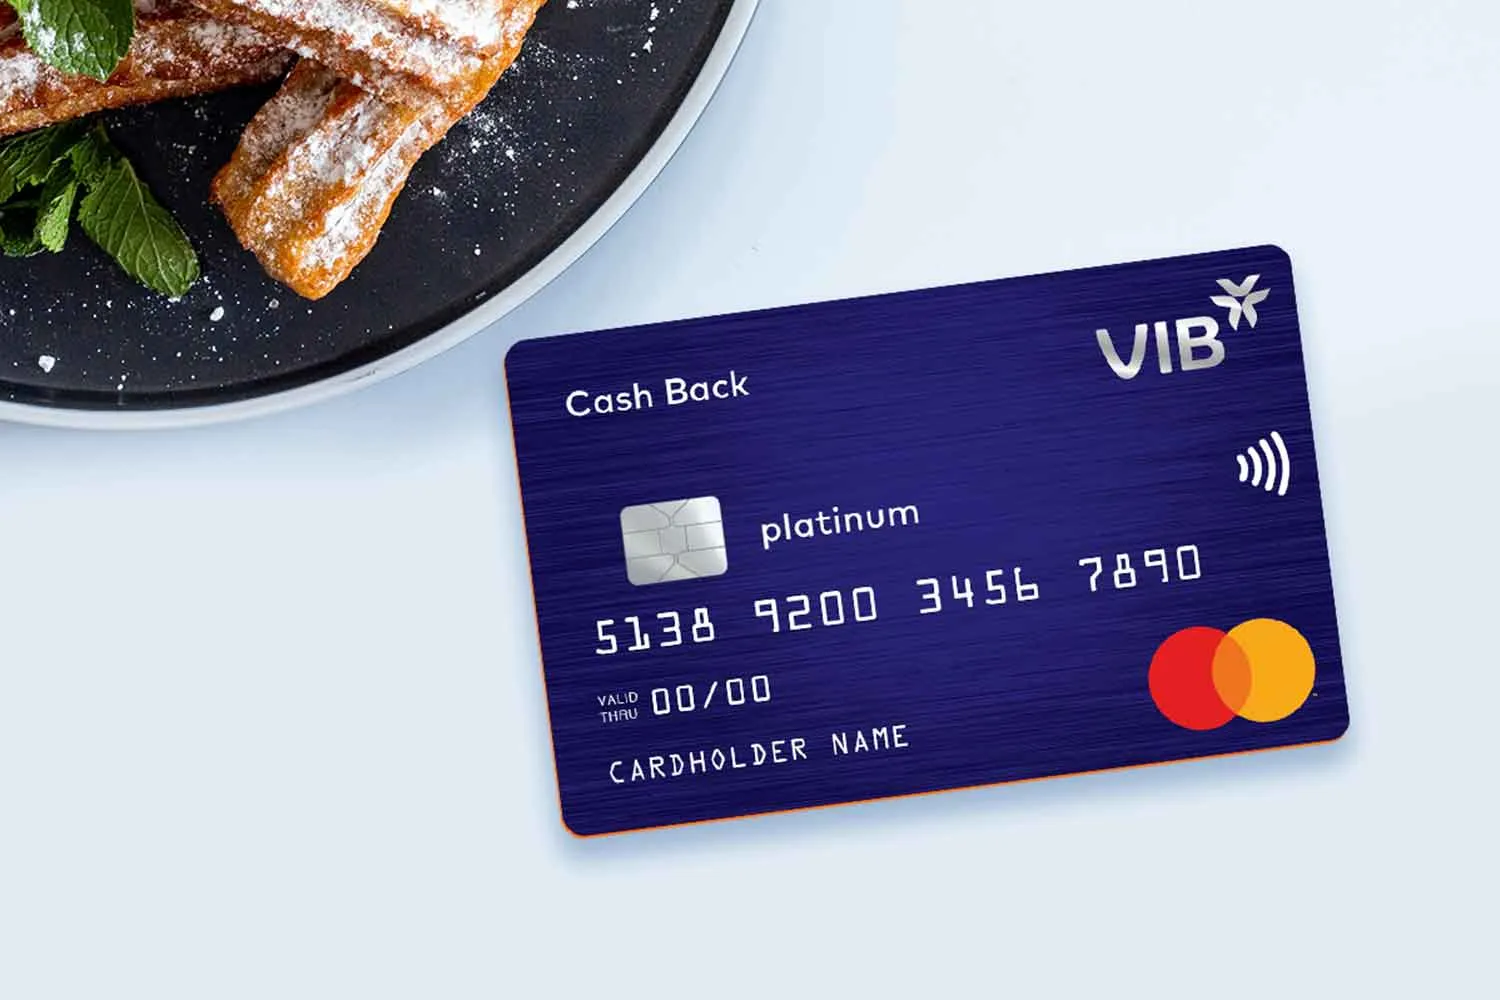 VIB Cash Back mang đến nhiều ưu đãi hấp dẫn